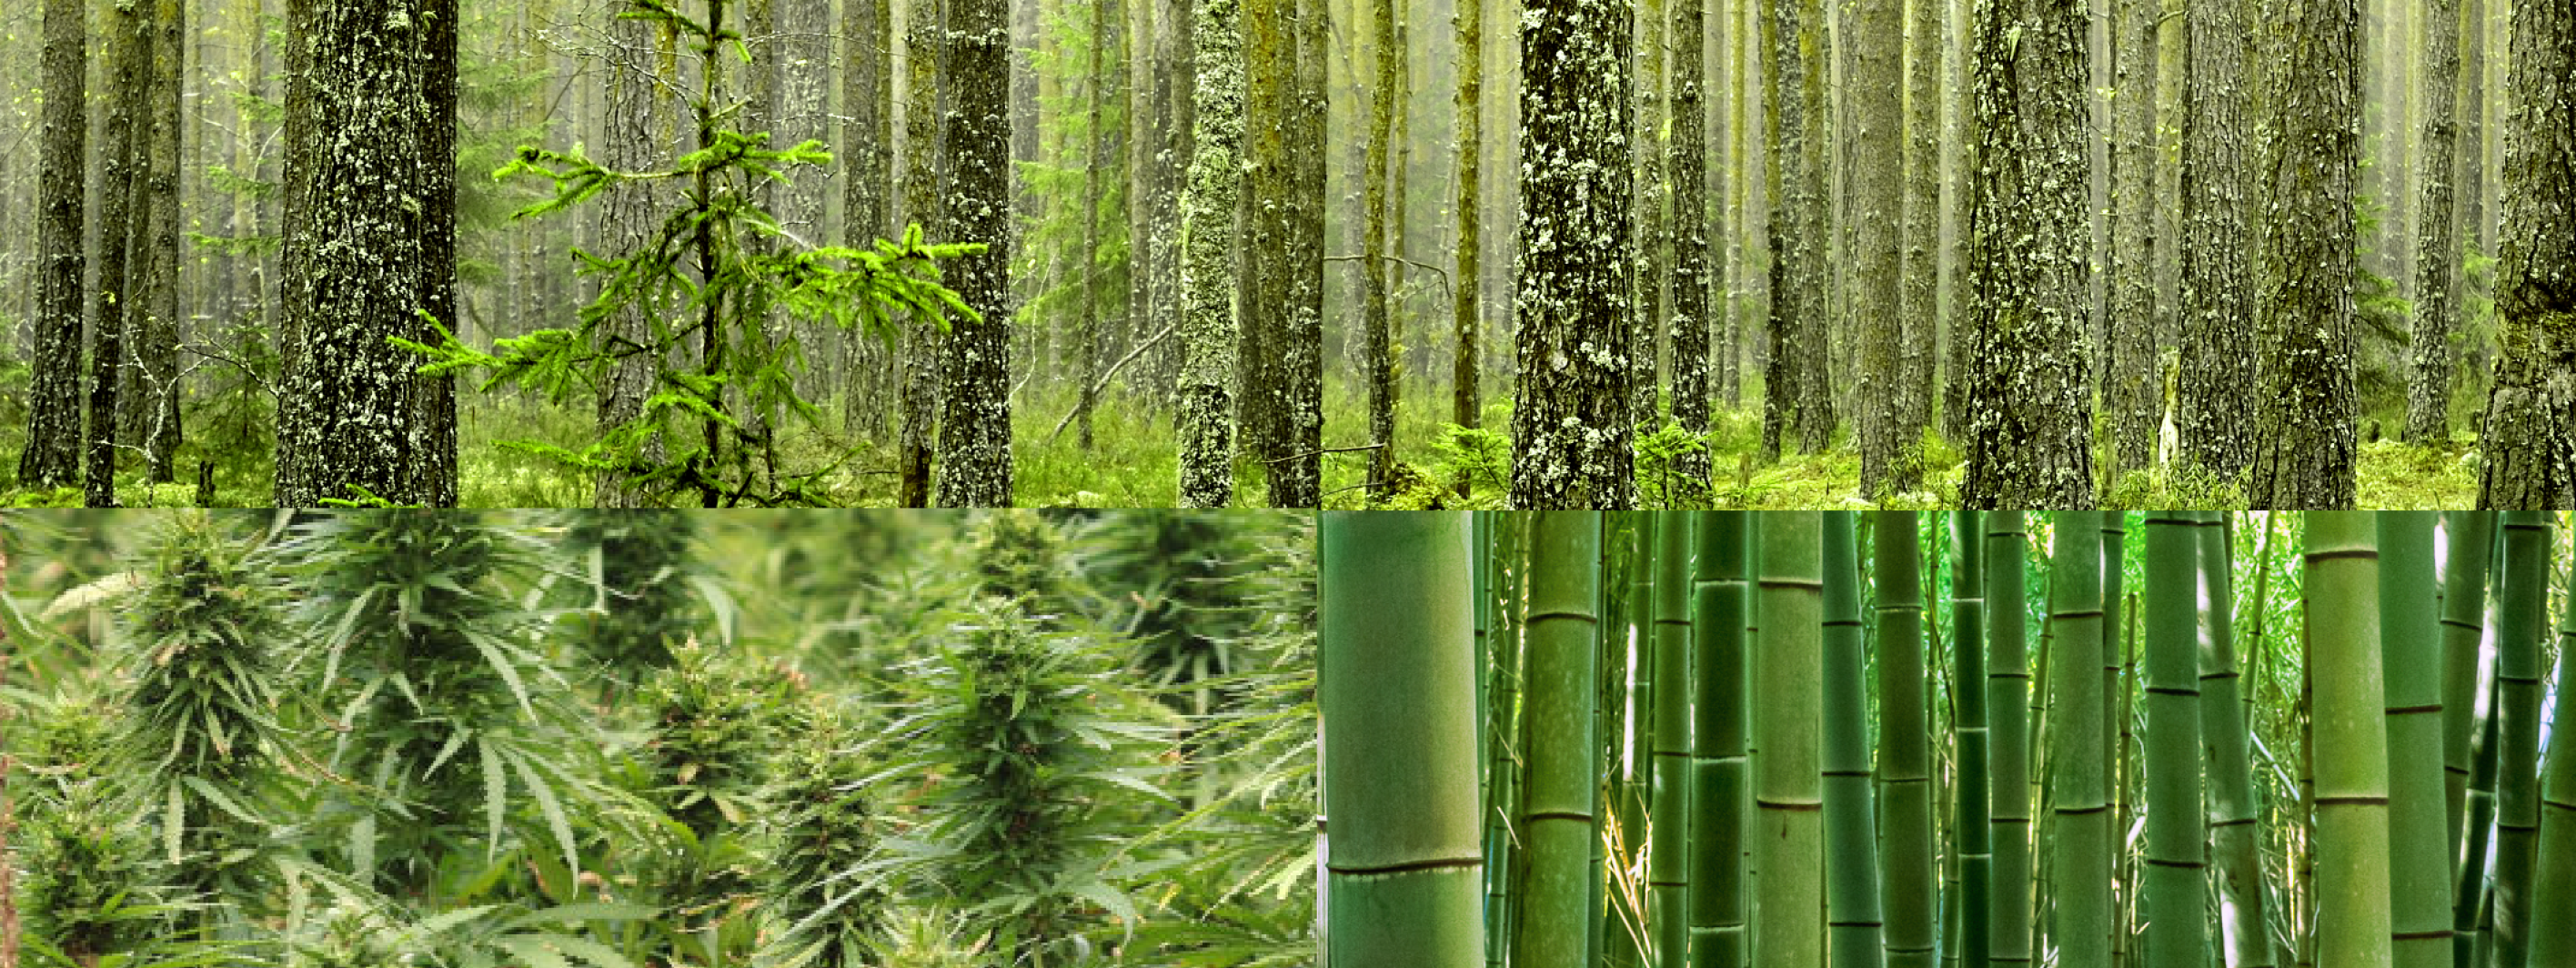 Bamboo, Hemp and Trees